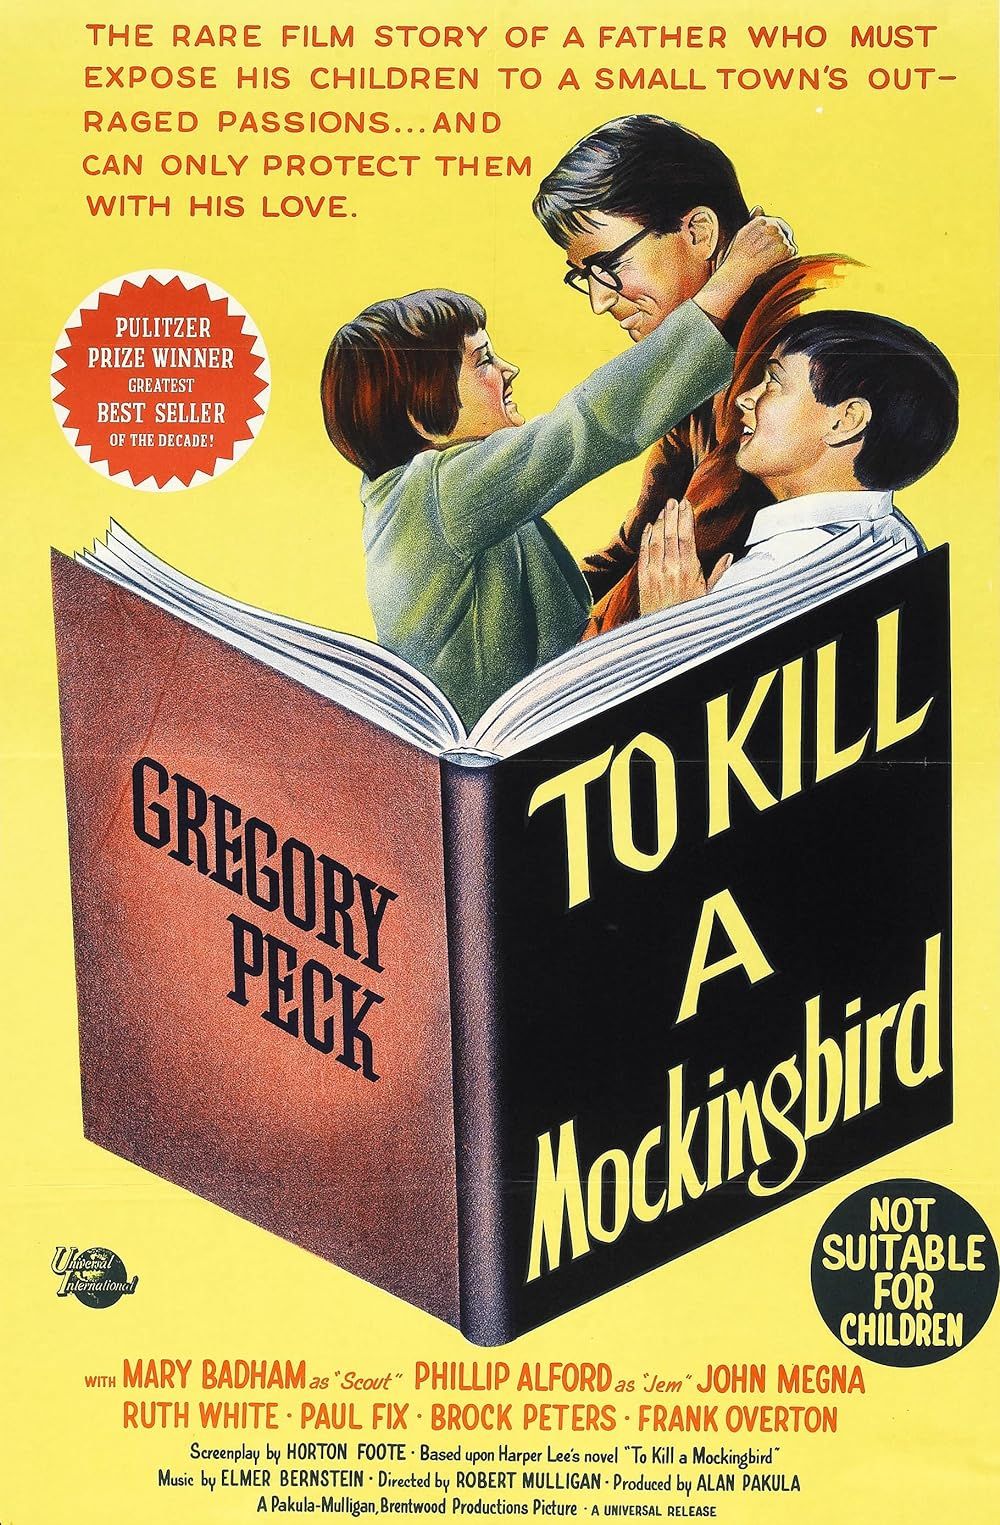 To K*ll a Mockingbird